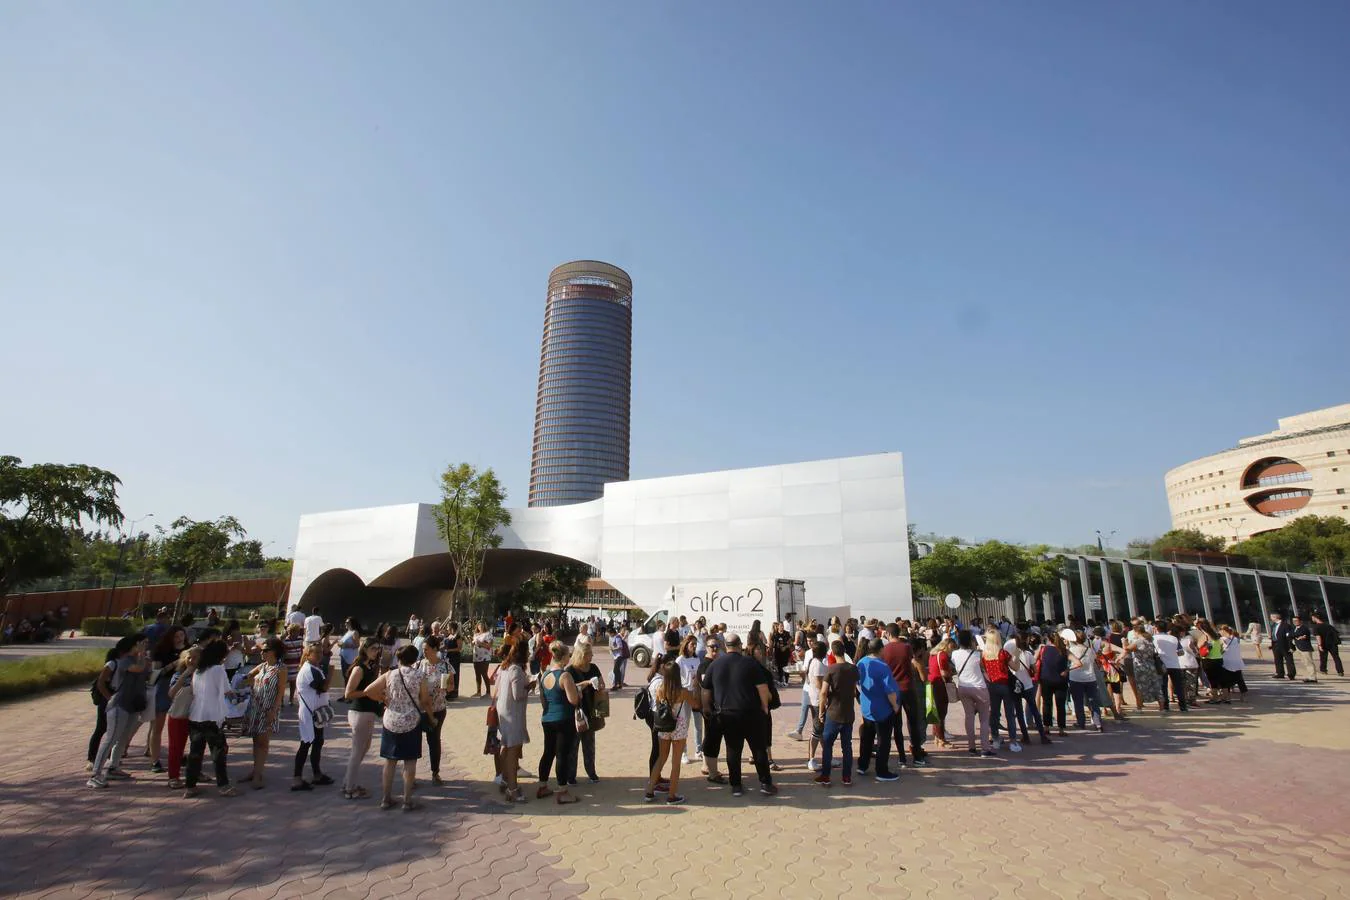 La apertura de Primark en Torre Sevilla, una fiesta donde participaron cientos de sevillanos